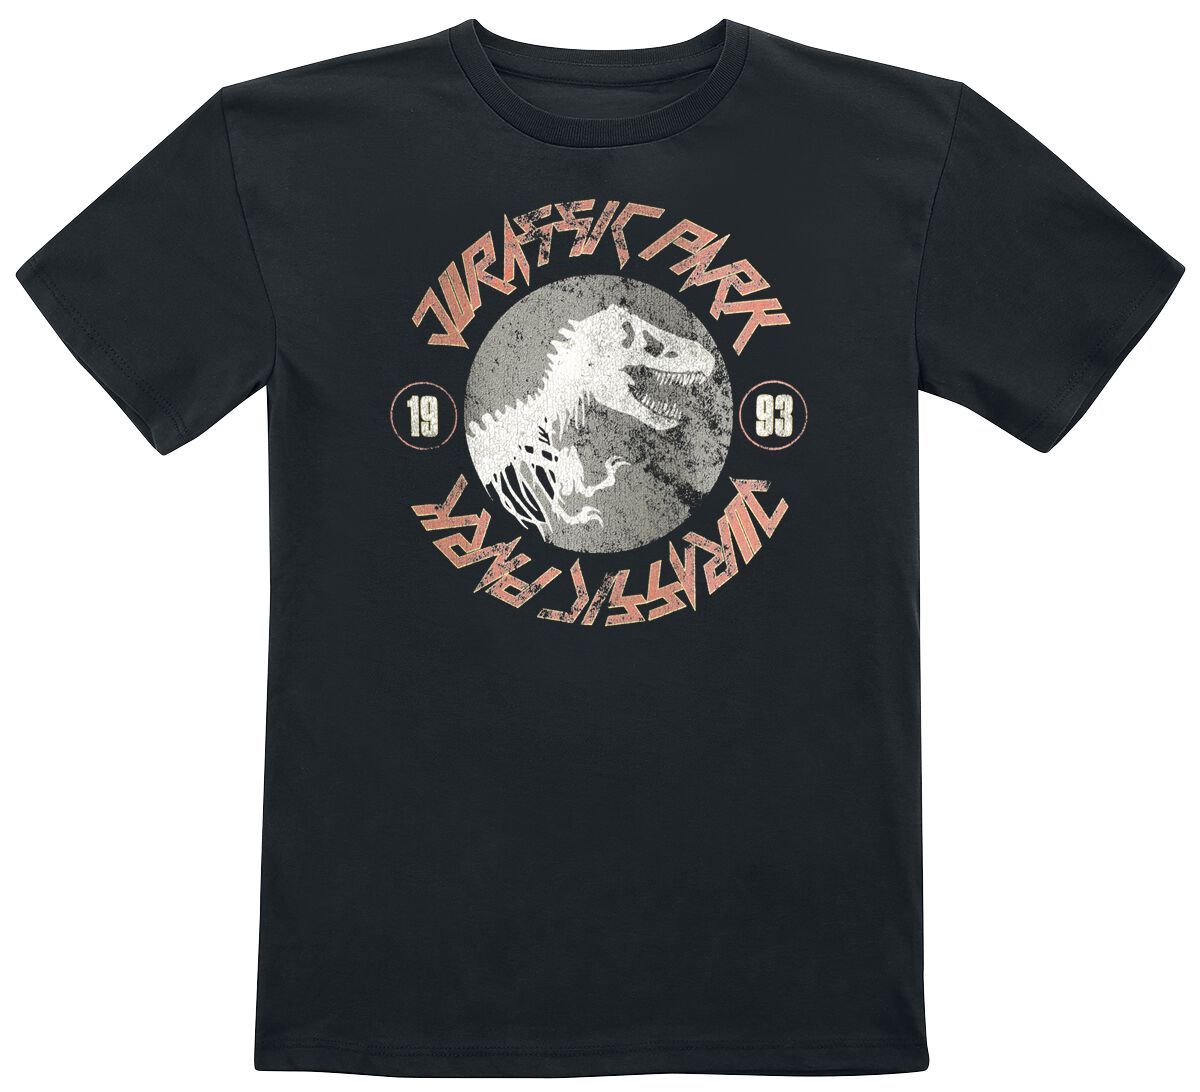 Jurassic Park T-Shirt für Kinder - Kids - 1993 - für Mädchen & Jungen - schwarz  - Lizenzierter Fanartikel von Jurassic Park